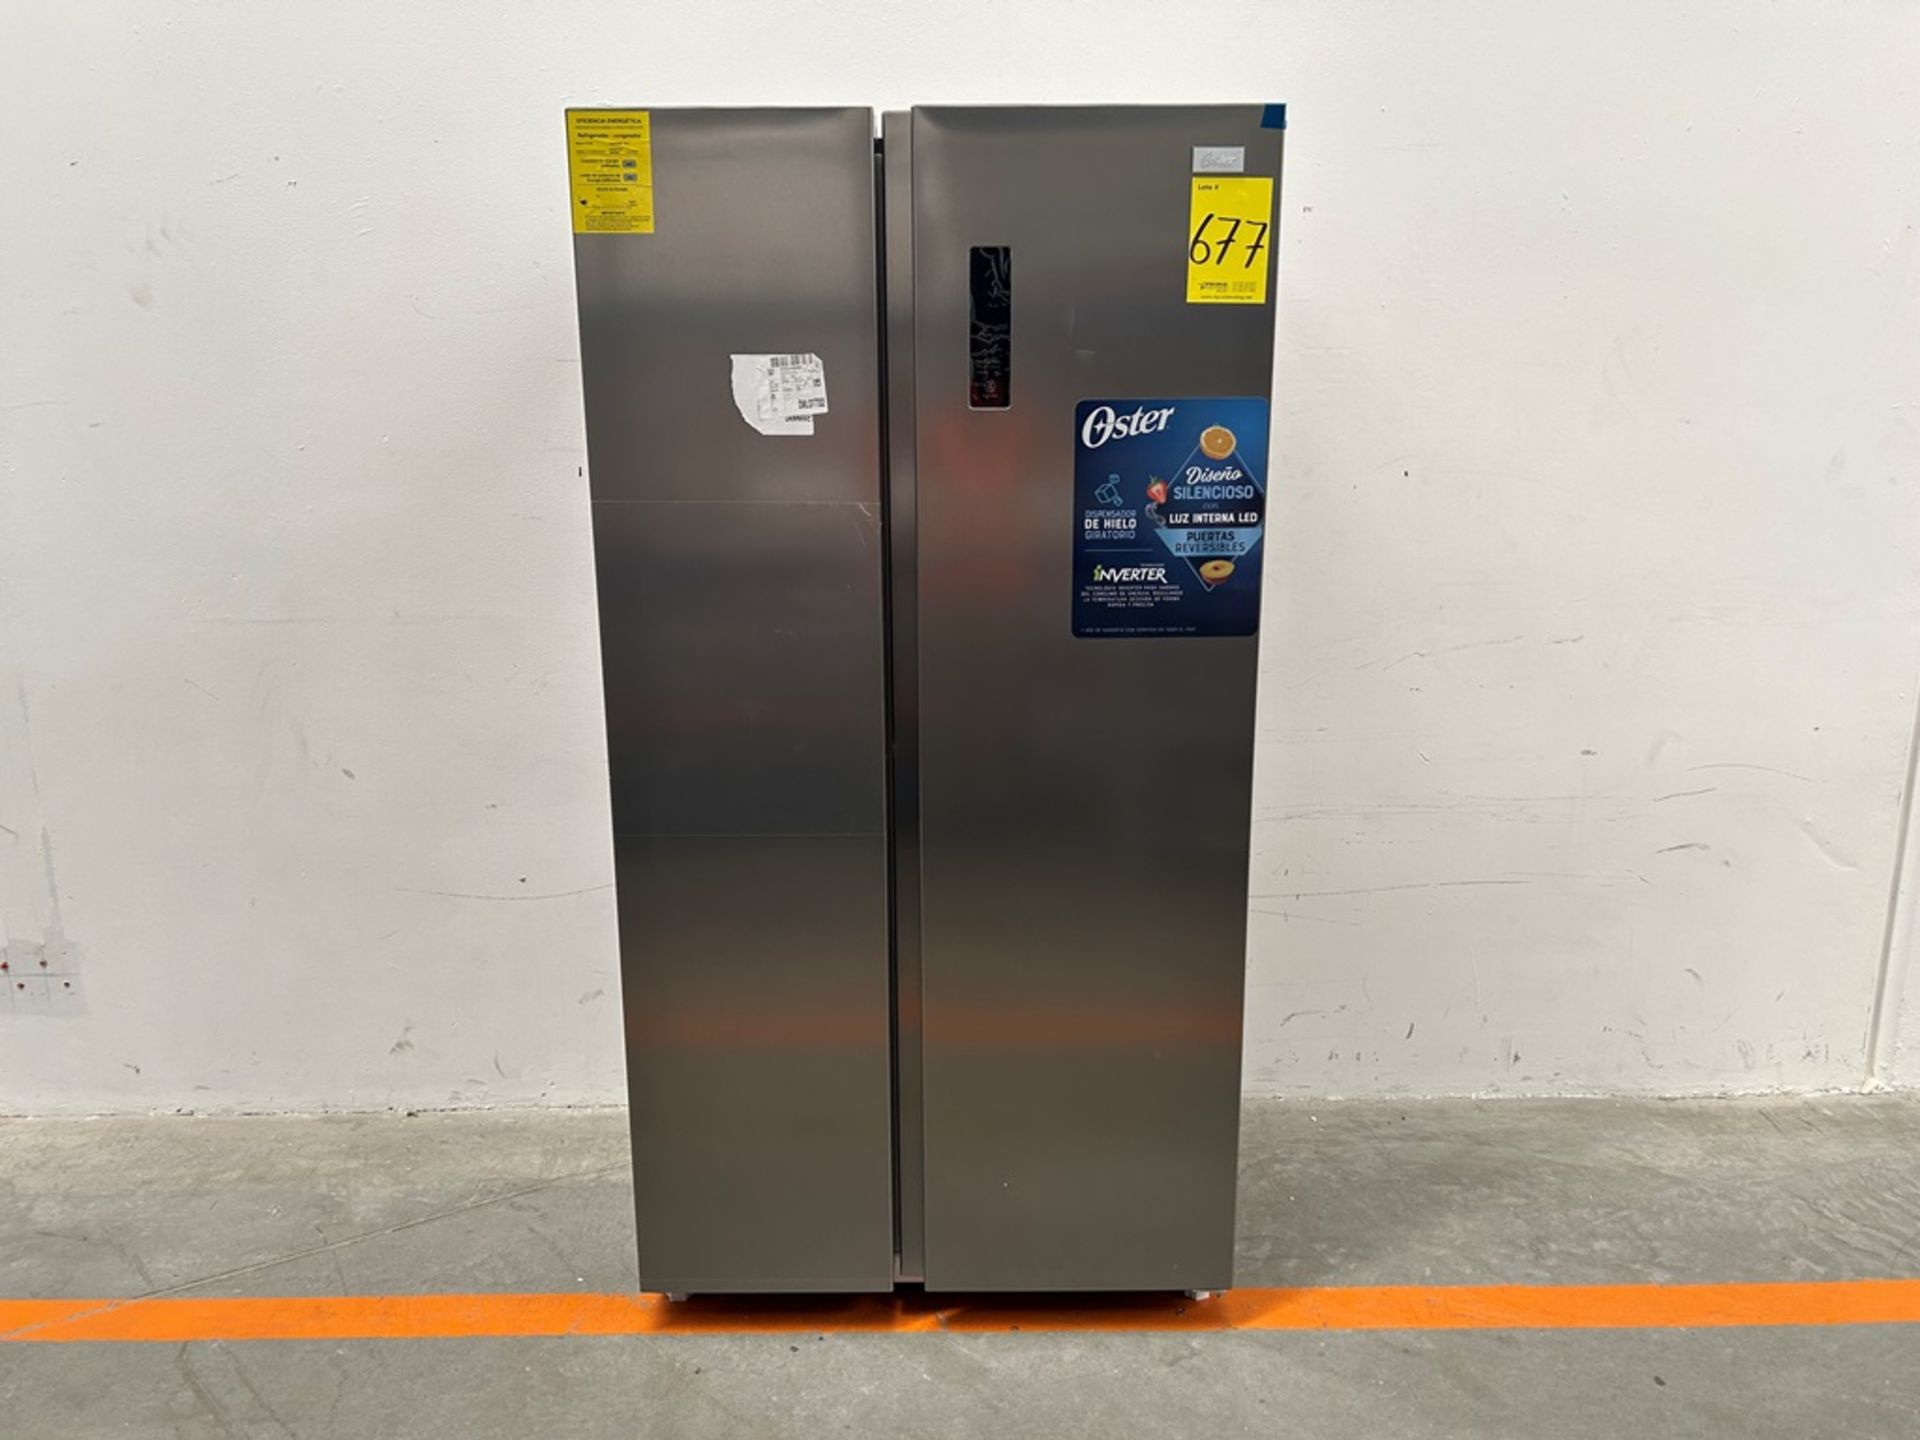 Refrigerador Marca OSTER Modelo OSSBSMV20SSEVI, Serie 160268, Color GRIS (Favor de inspeccionar)